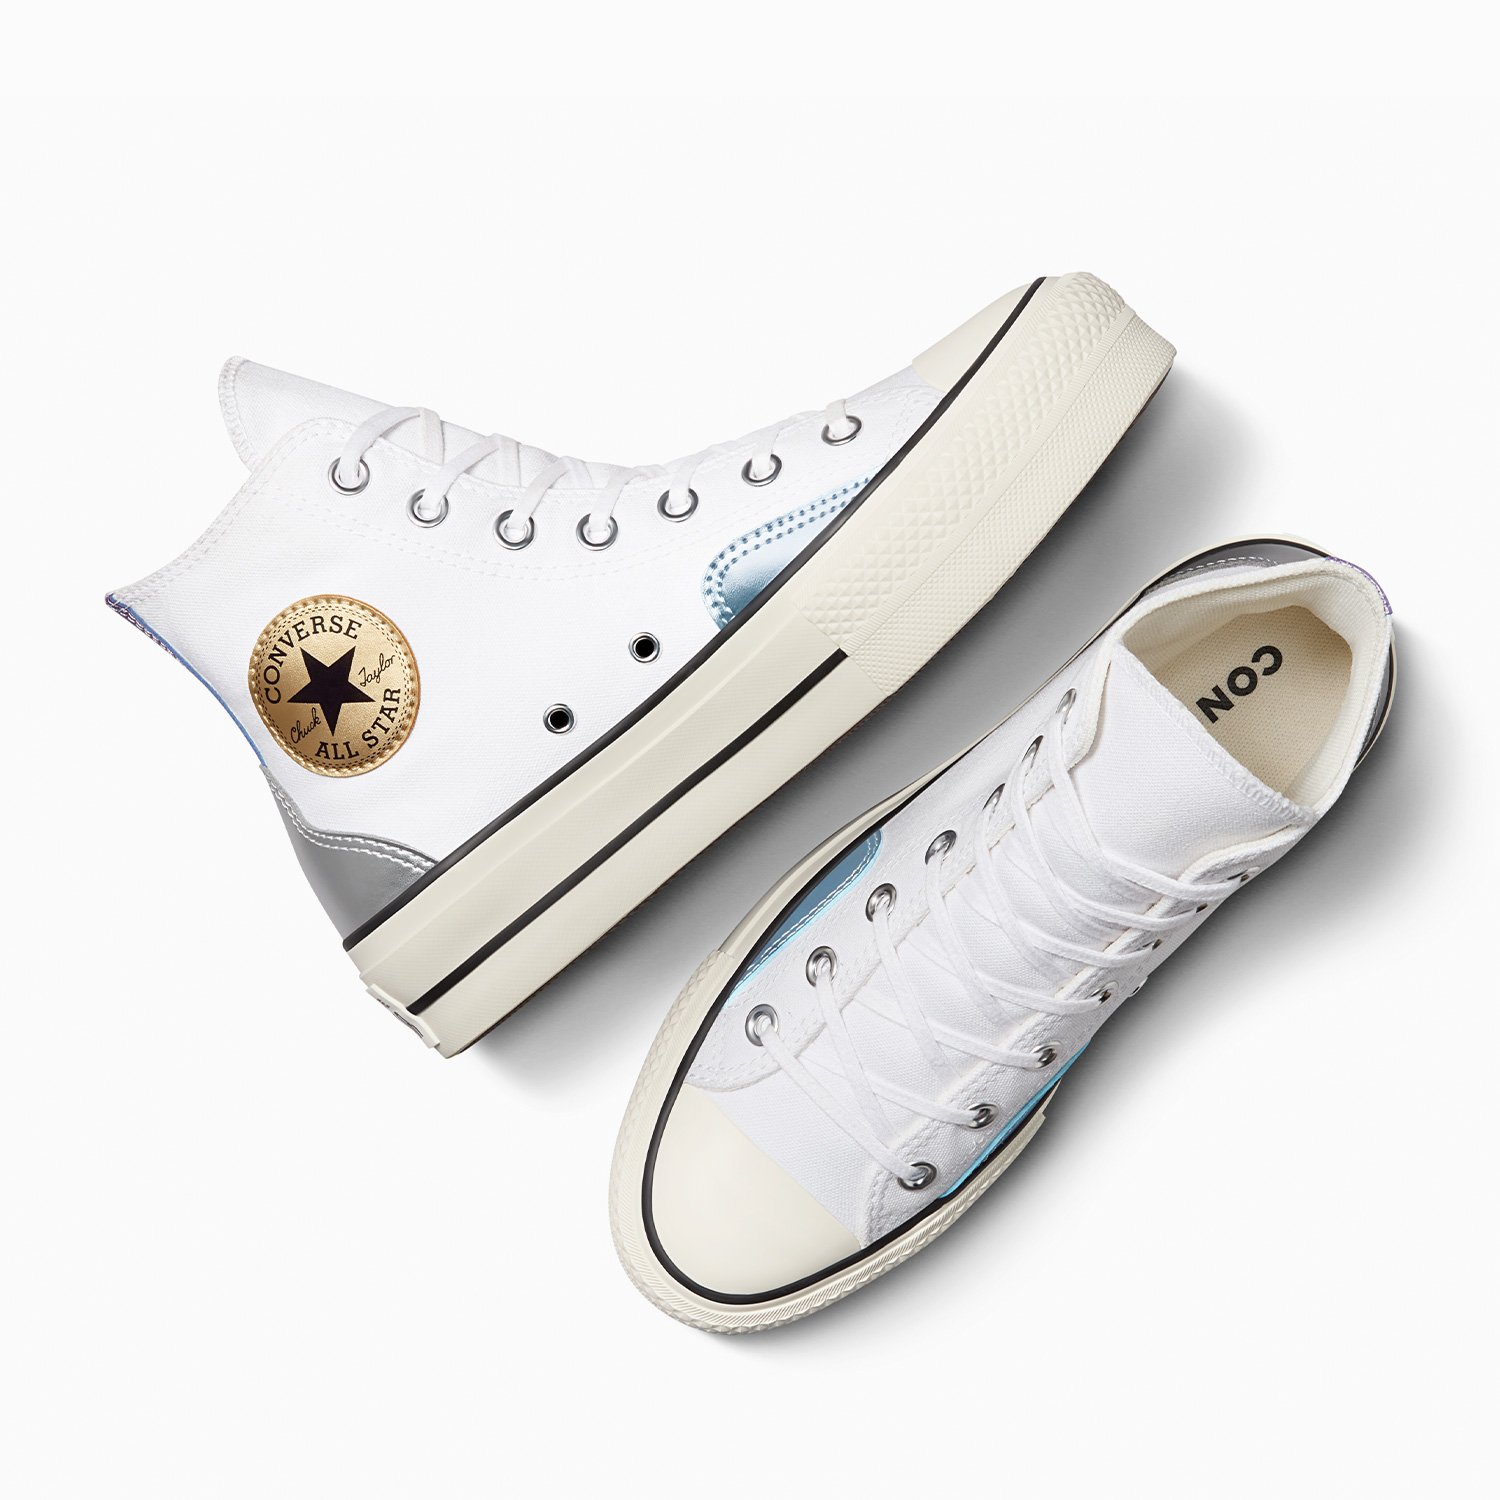 Converse Chuck Taylor All Star Lift Kadın Beyaz Platform Sneaker